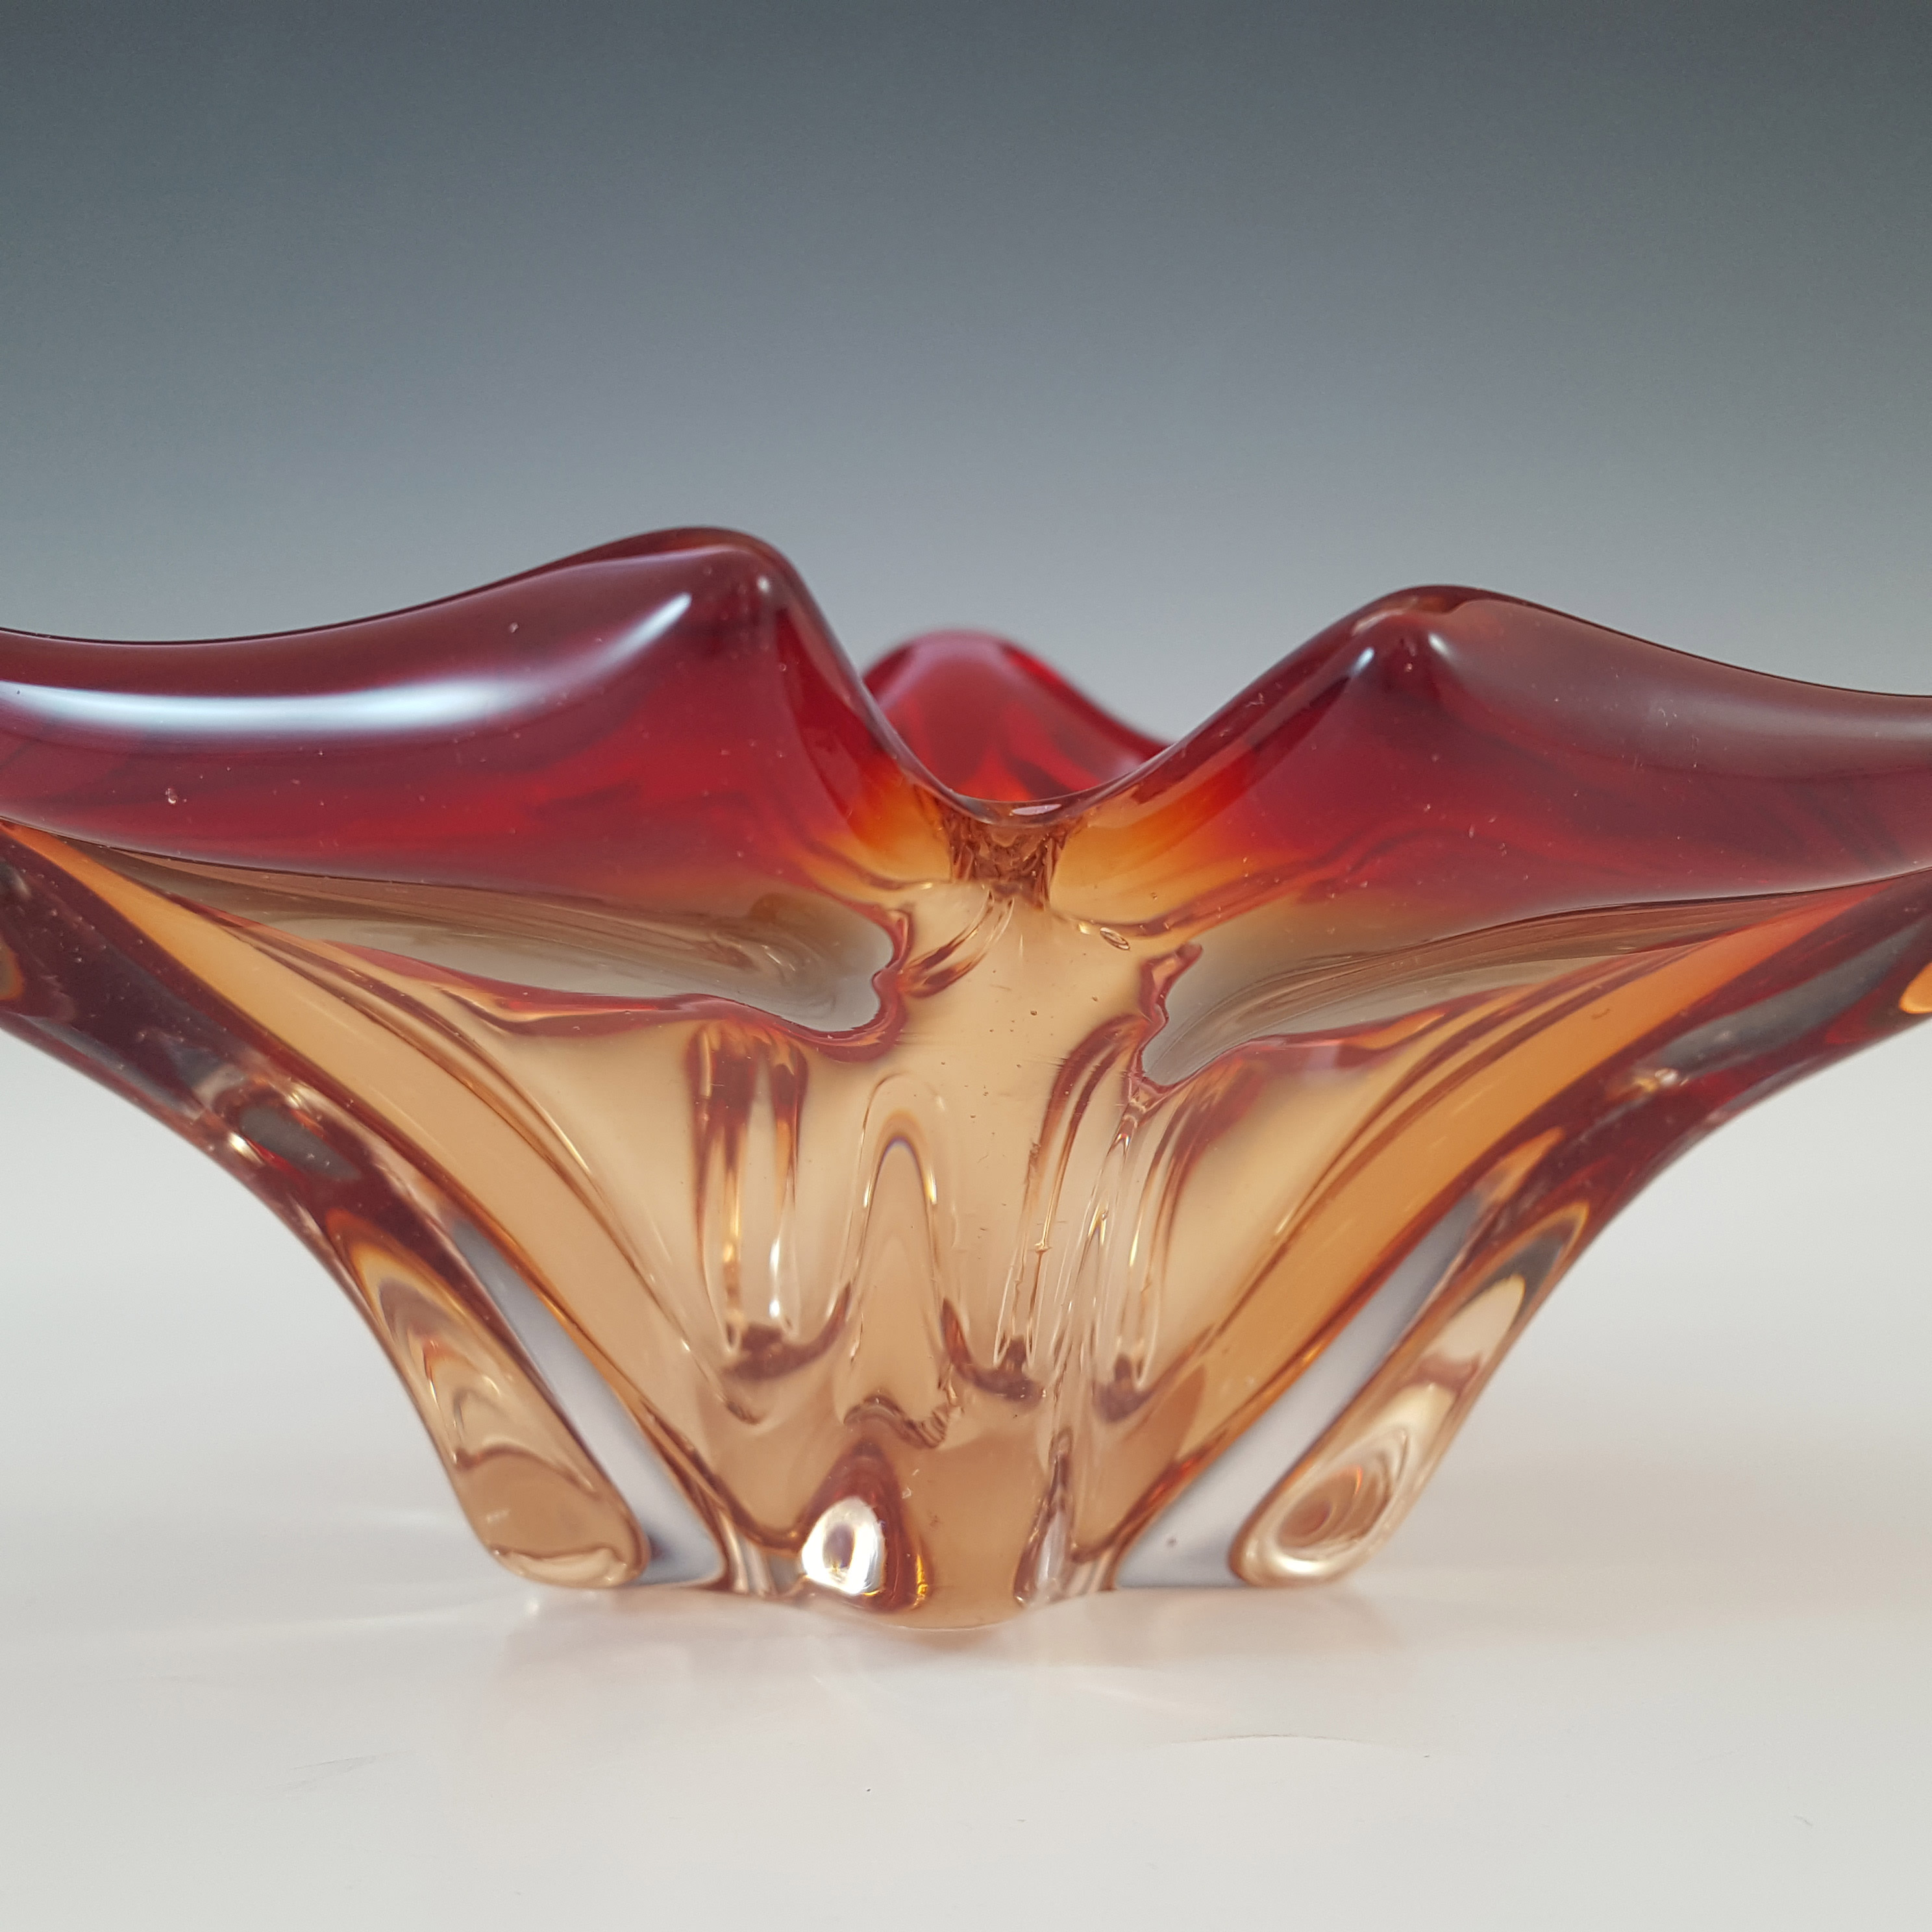 Cristallo Venezia CCC Retro Murano Red & Clear Glass Bowl - Click Image to Close